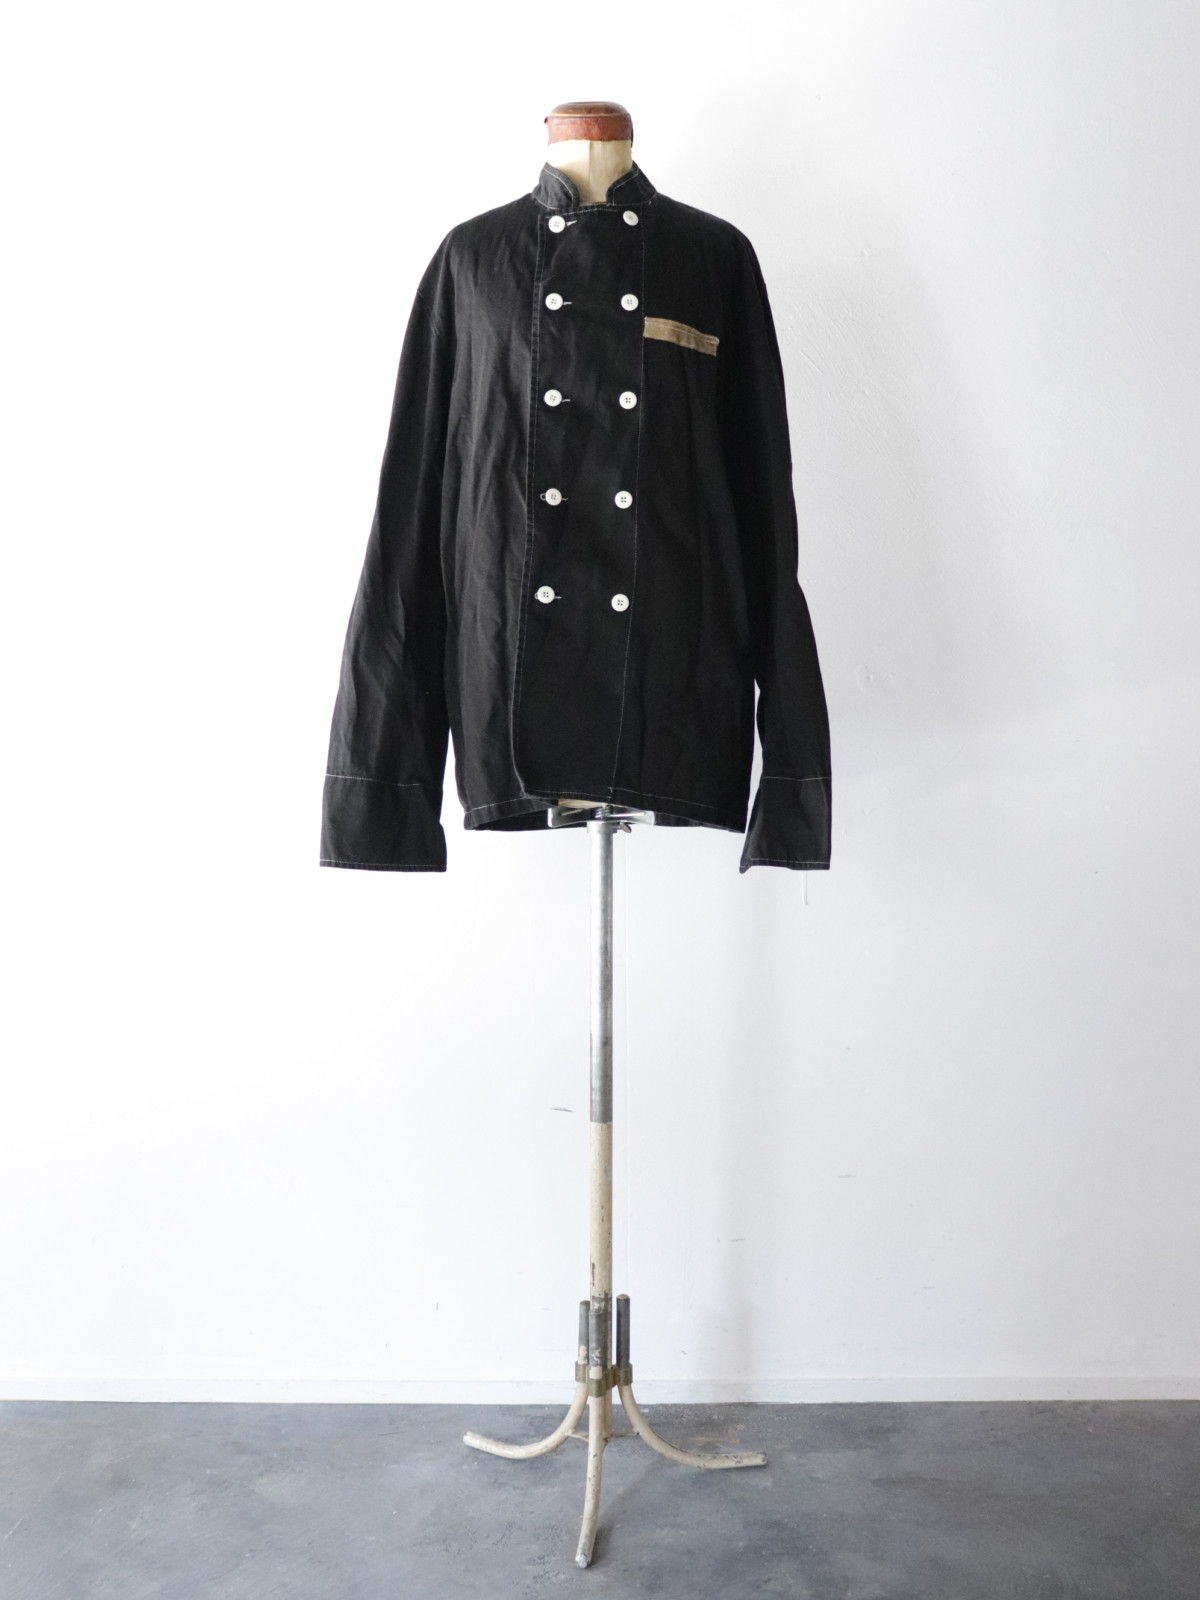 cook jacket, France, Black-dyed ,